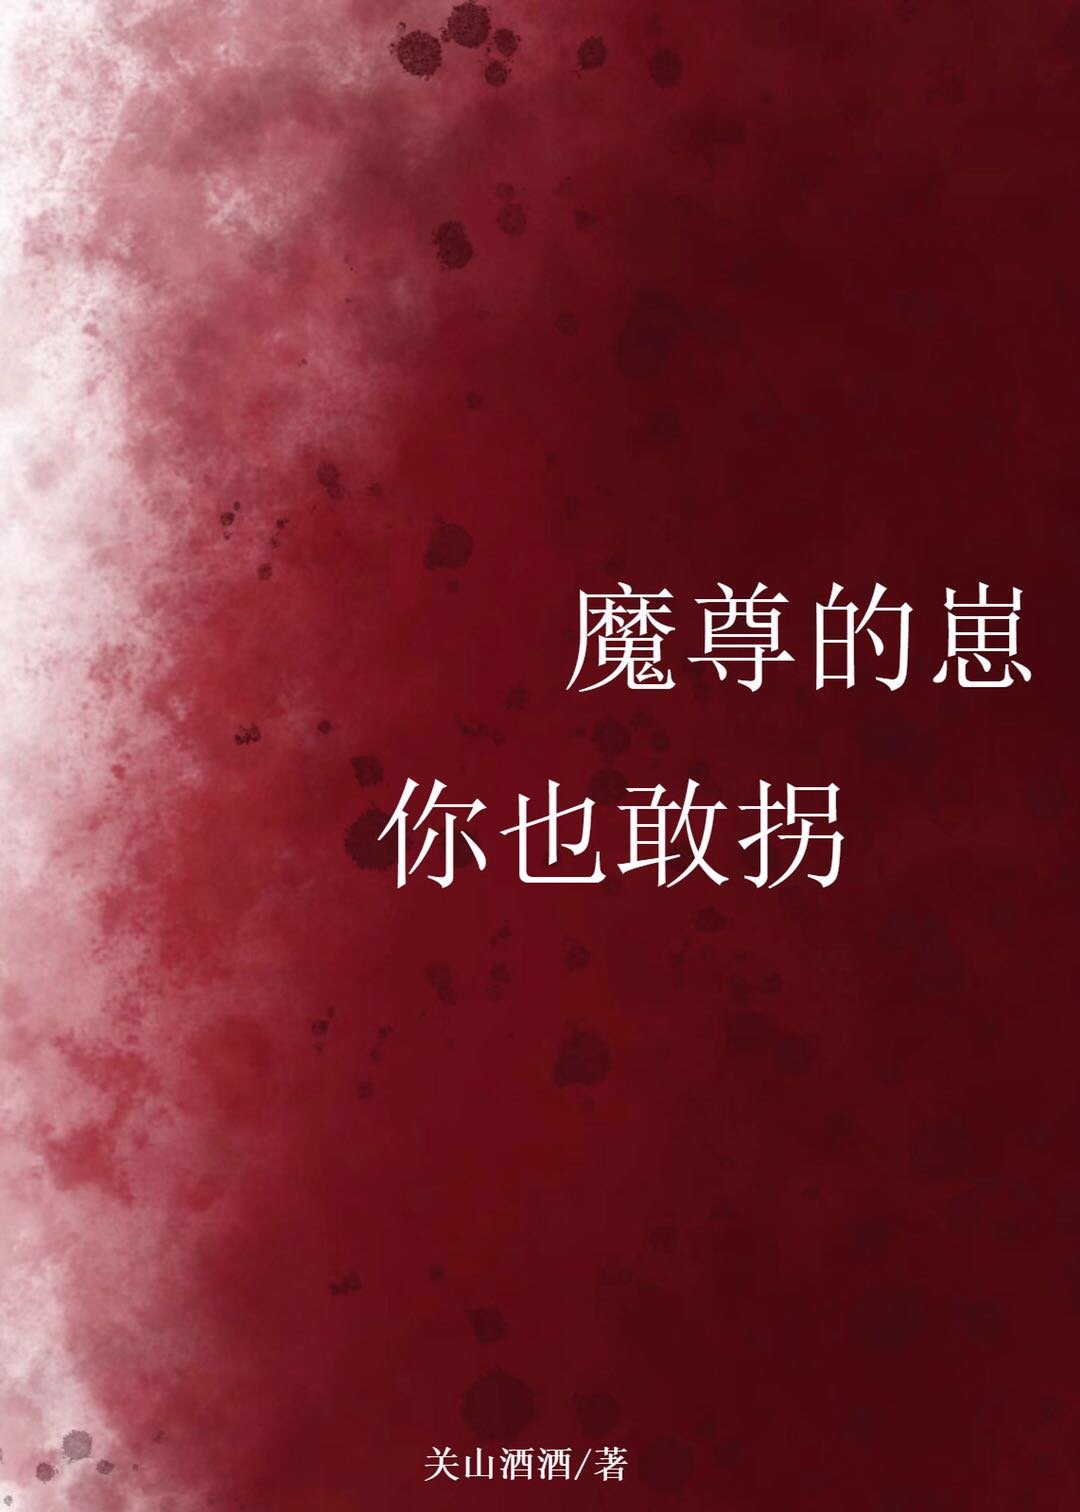 [小说]晋江VIP2021.2.26完结 总书评数：84当前被收藏数：1107 仙尊肚子大了，是谁干的？ 仙_魔尊的崽你也敢拐